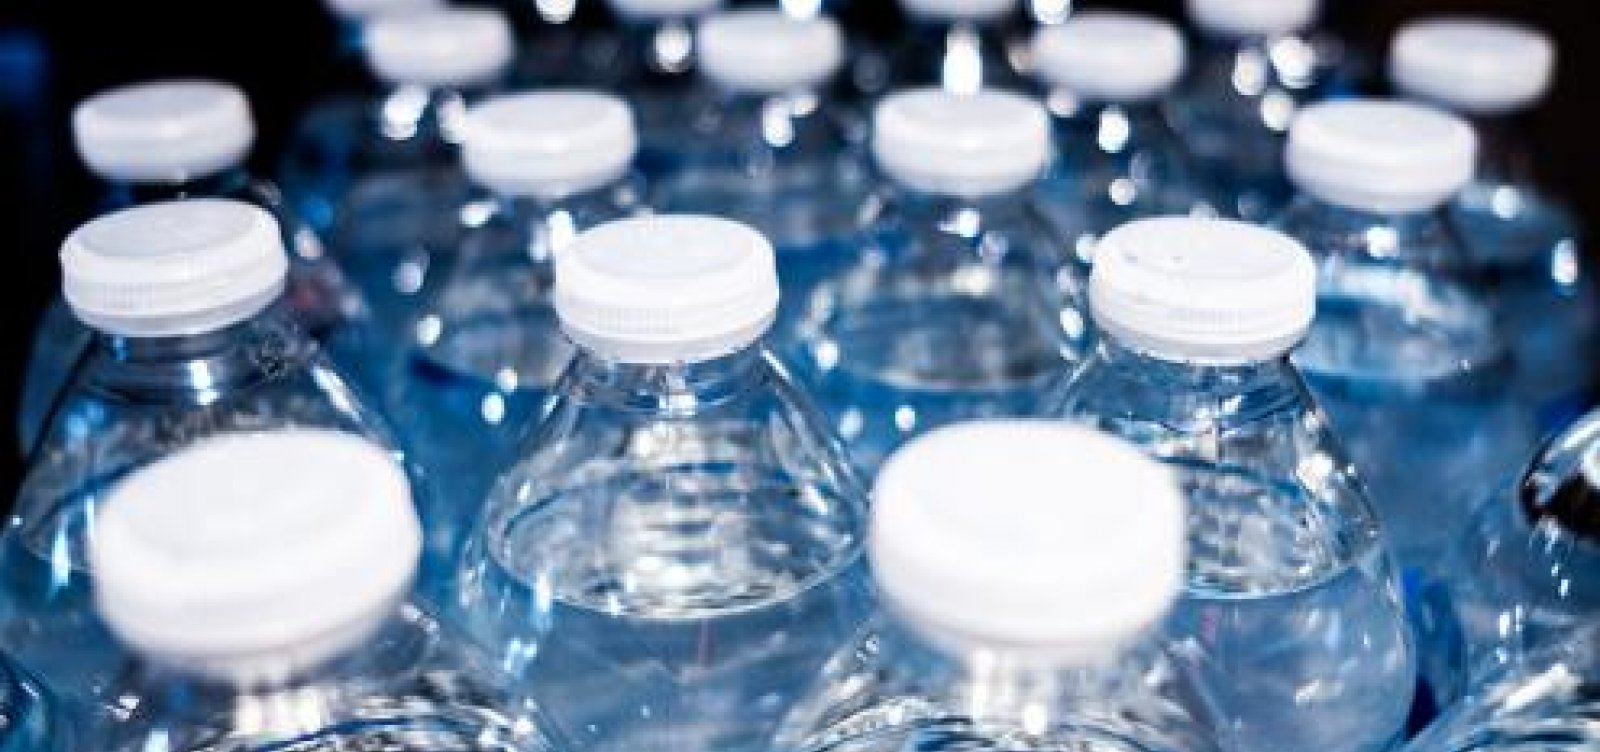 Governo publica portaria que obriga distribuição gratuita de água em eventos nos dias de calor extremo